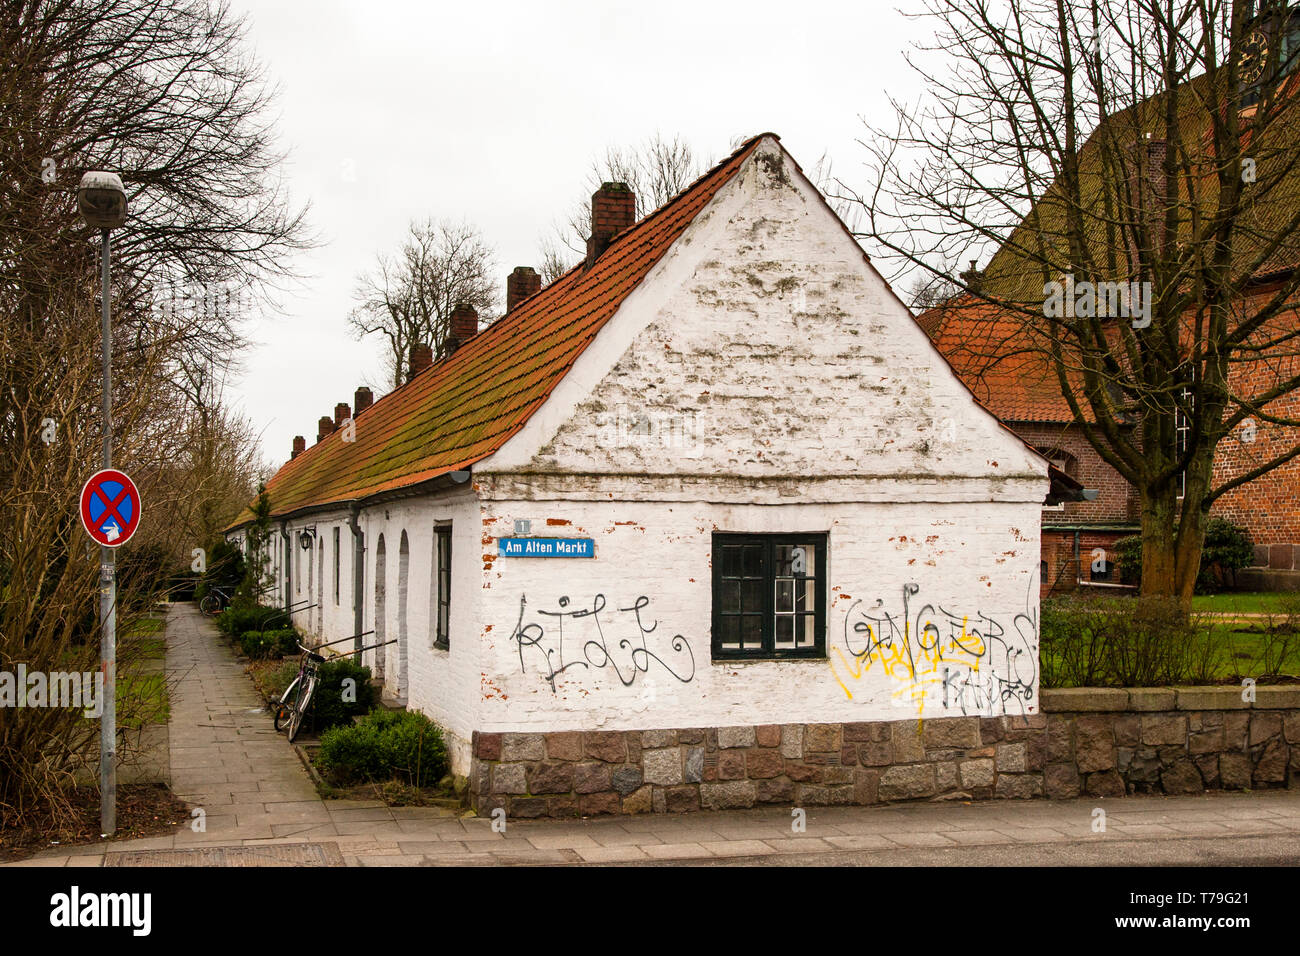 Gottesbuden in Ahrensburg, Deutschland. 22 Häuser (Gottes), die bedürftige Menschen für den symbolischen Betrag von weniger als einem Euro gemietet werden Stockfoto